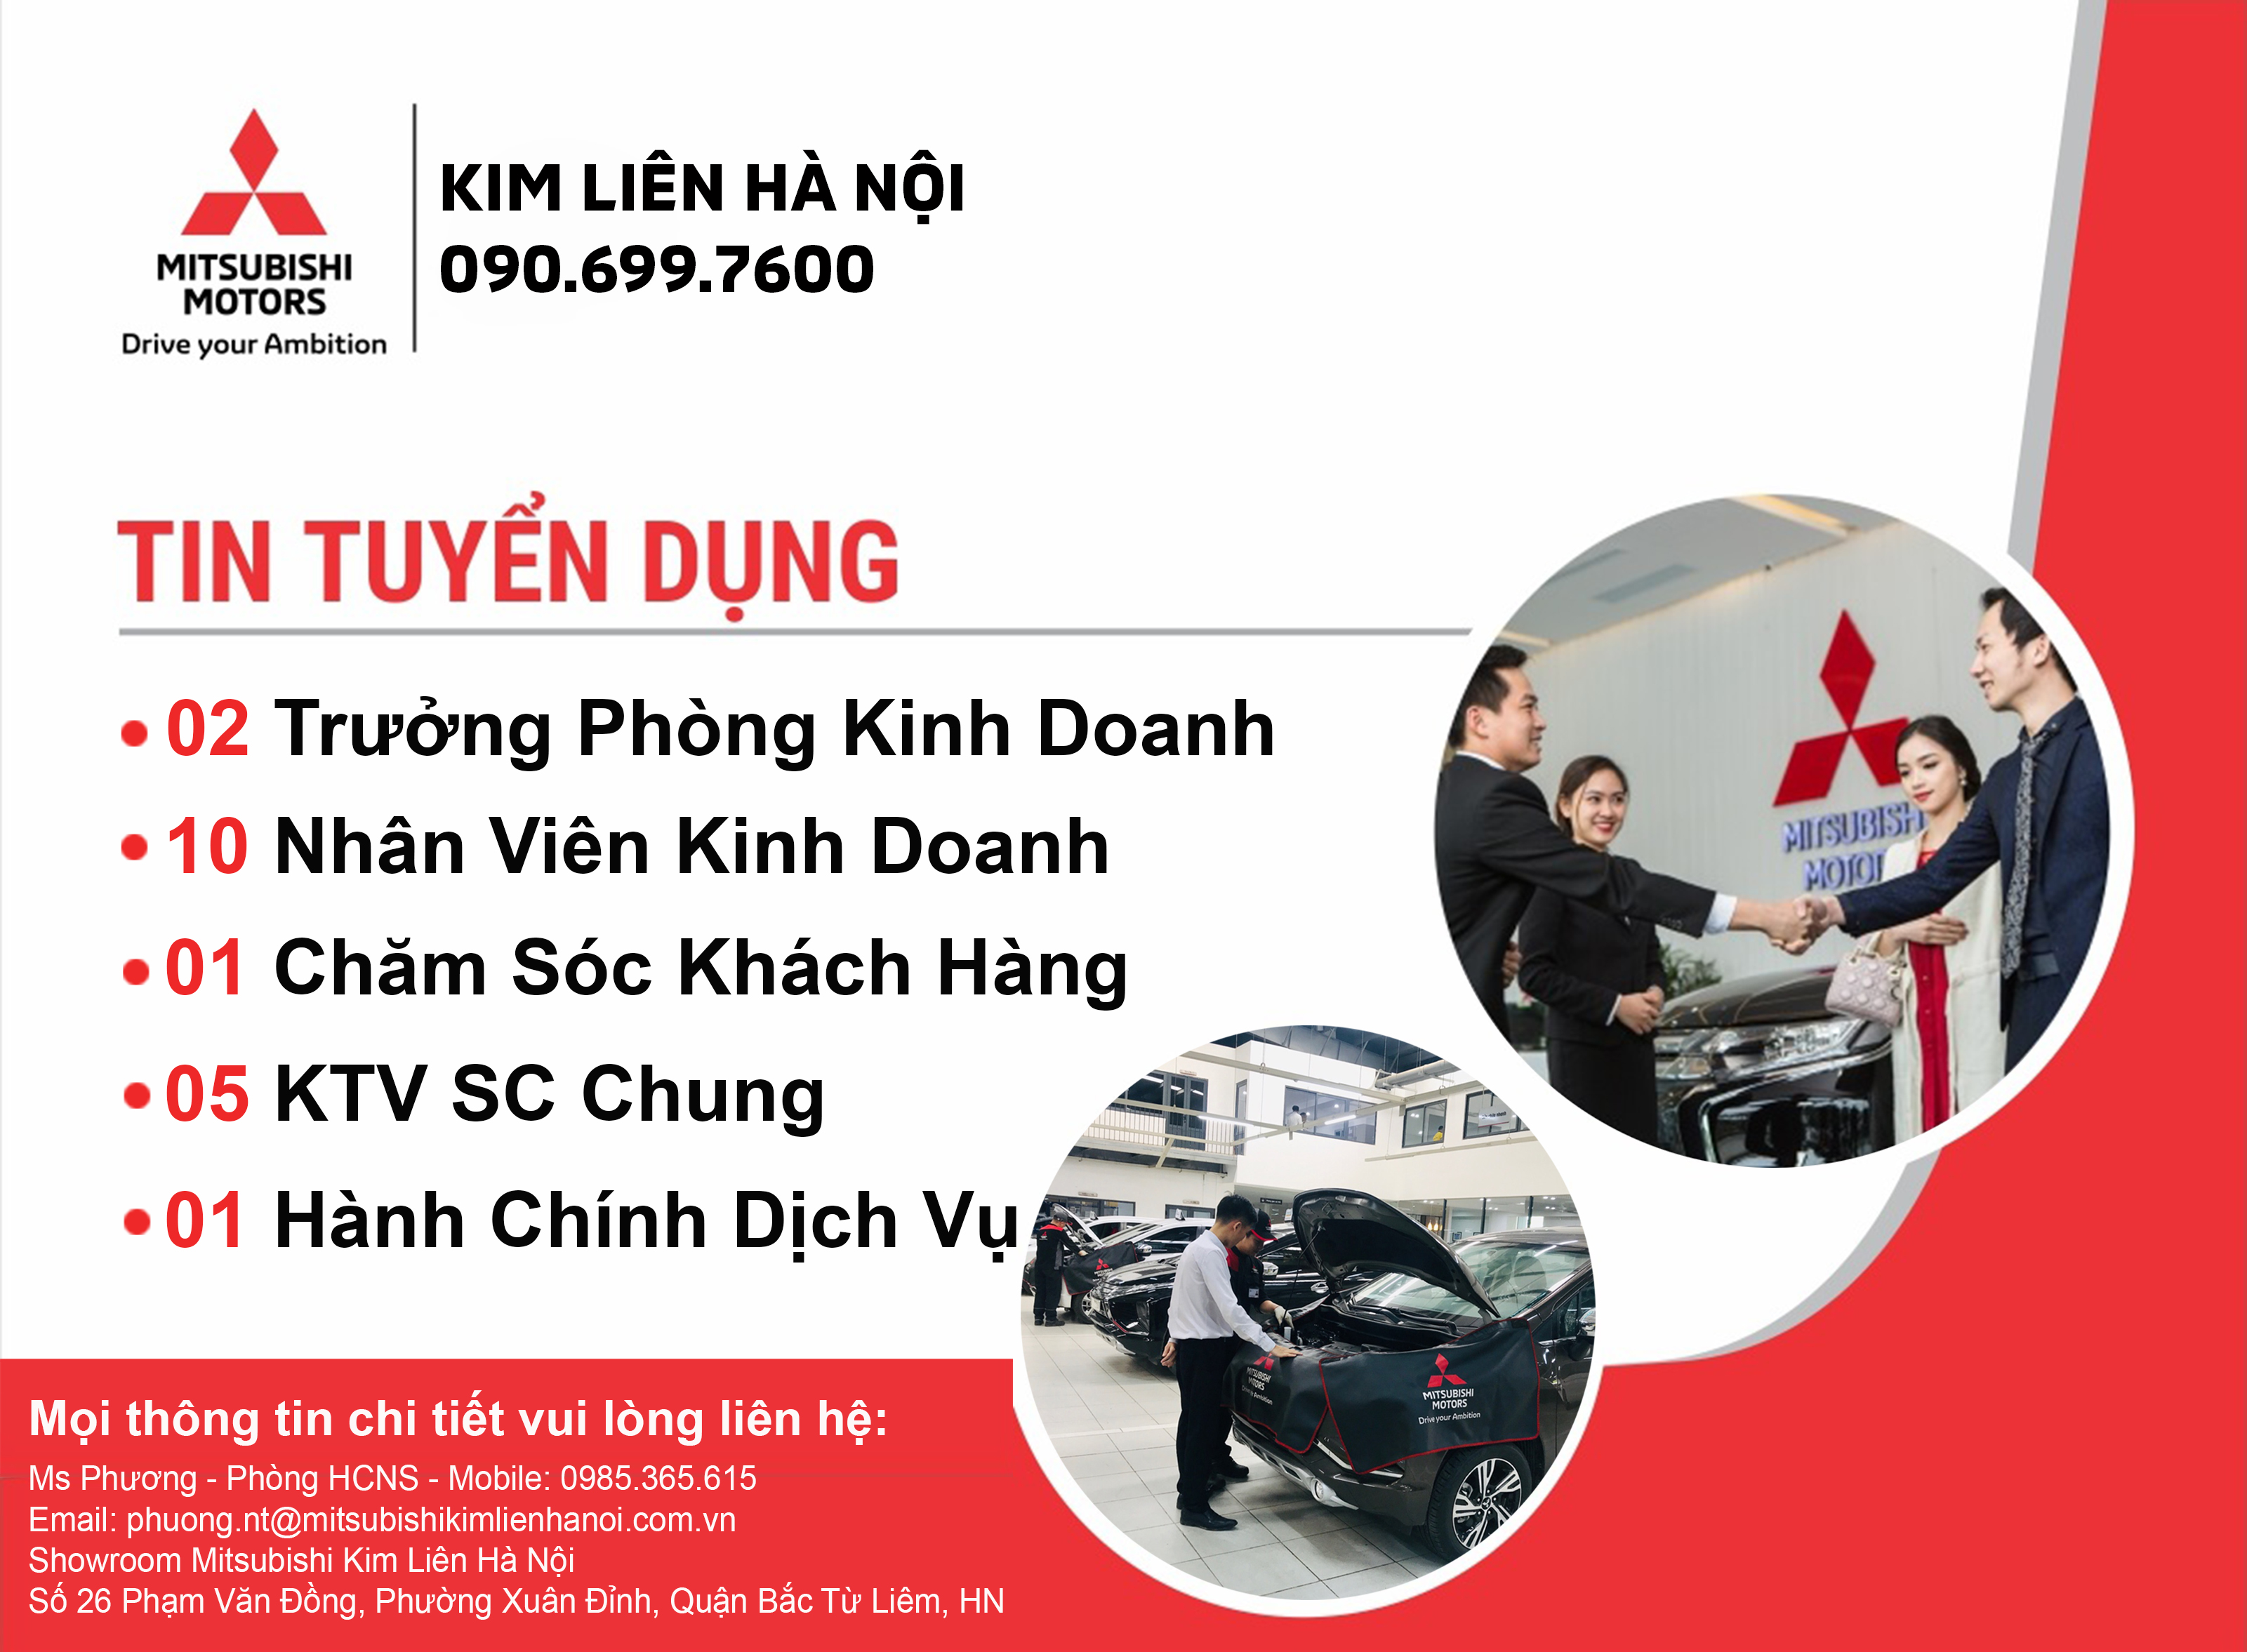 Mitsubishi Kim Liên là một trong những thương hiệu xe hơi uy tín và đáng tin cậy tại Việt Nam. Xem hình ảnh để khám phá các sản phẩm mới nhất của hãng và tìm hiểu thêm về tính năng của chúng.